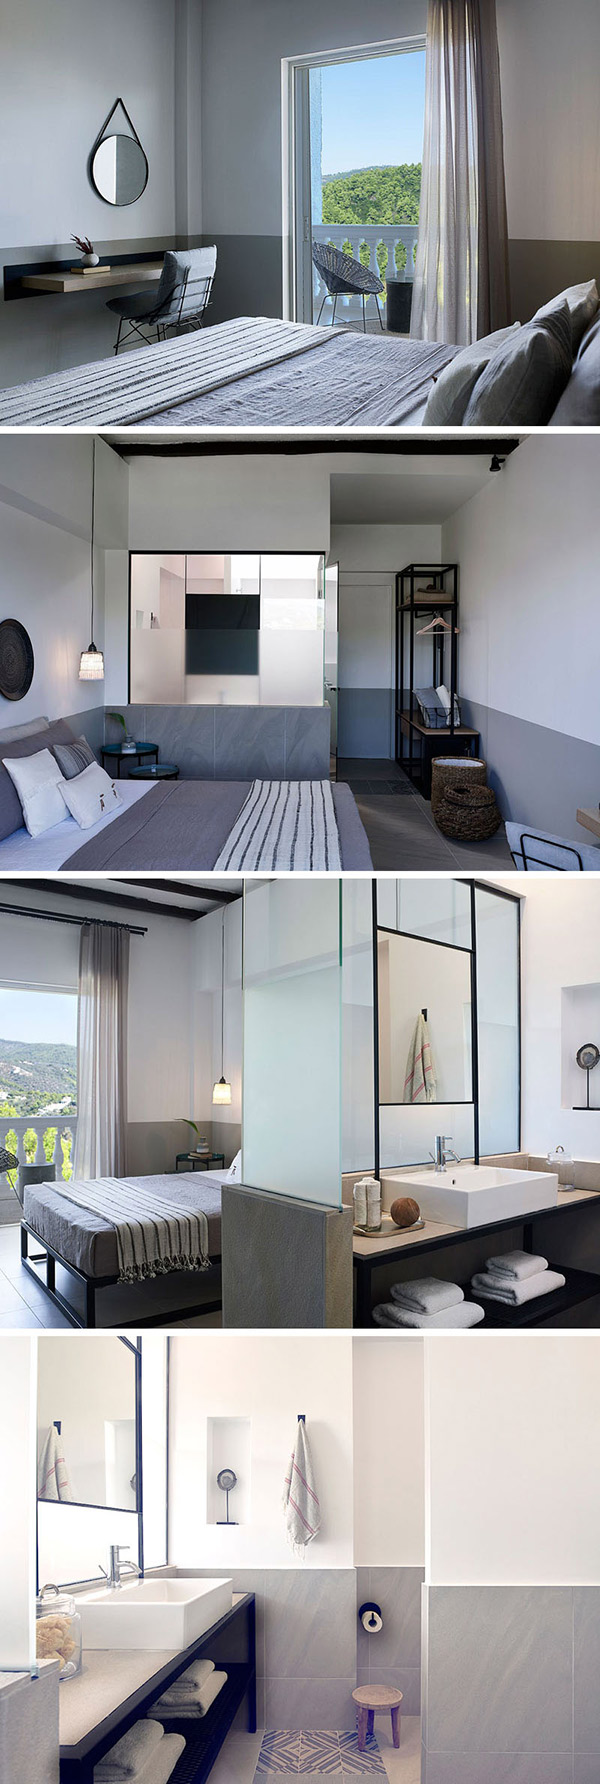 تقابل دو سبک روستیک و معاصر در طراحی داخلی این هتل